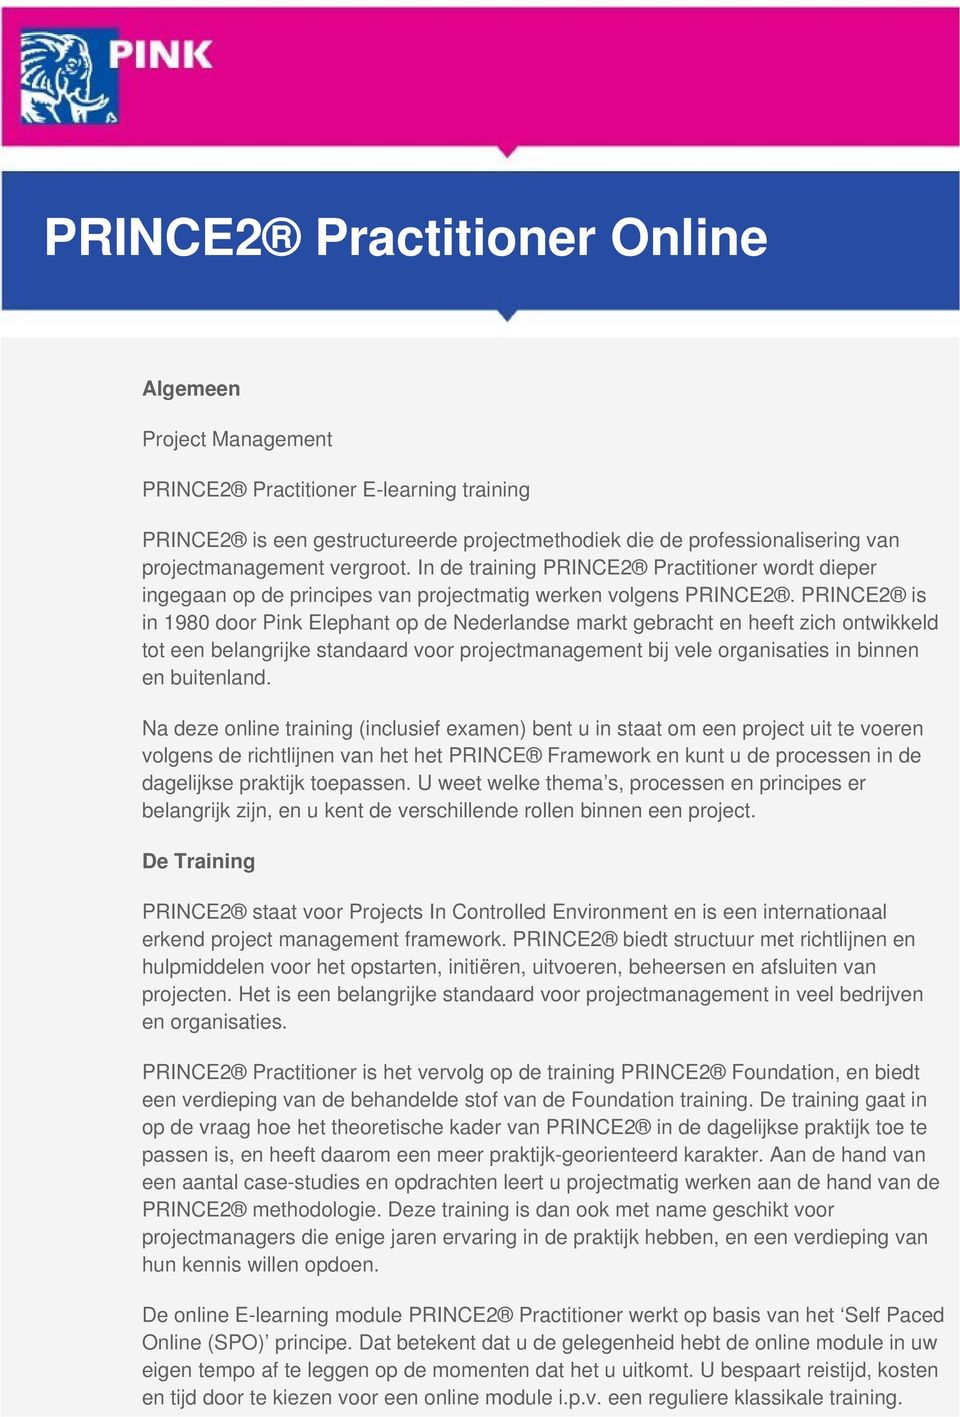 PRINCE2 is in 1980 door Pink Elephant op de Nederlandse markt gebracht en heeft zich ontwikkeld tot een belangrijke standaard voor projectmanagement bij vele organisaties in binnen en buitenland.